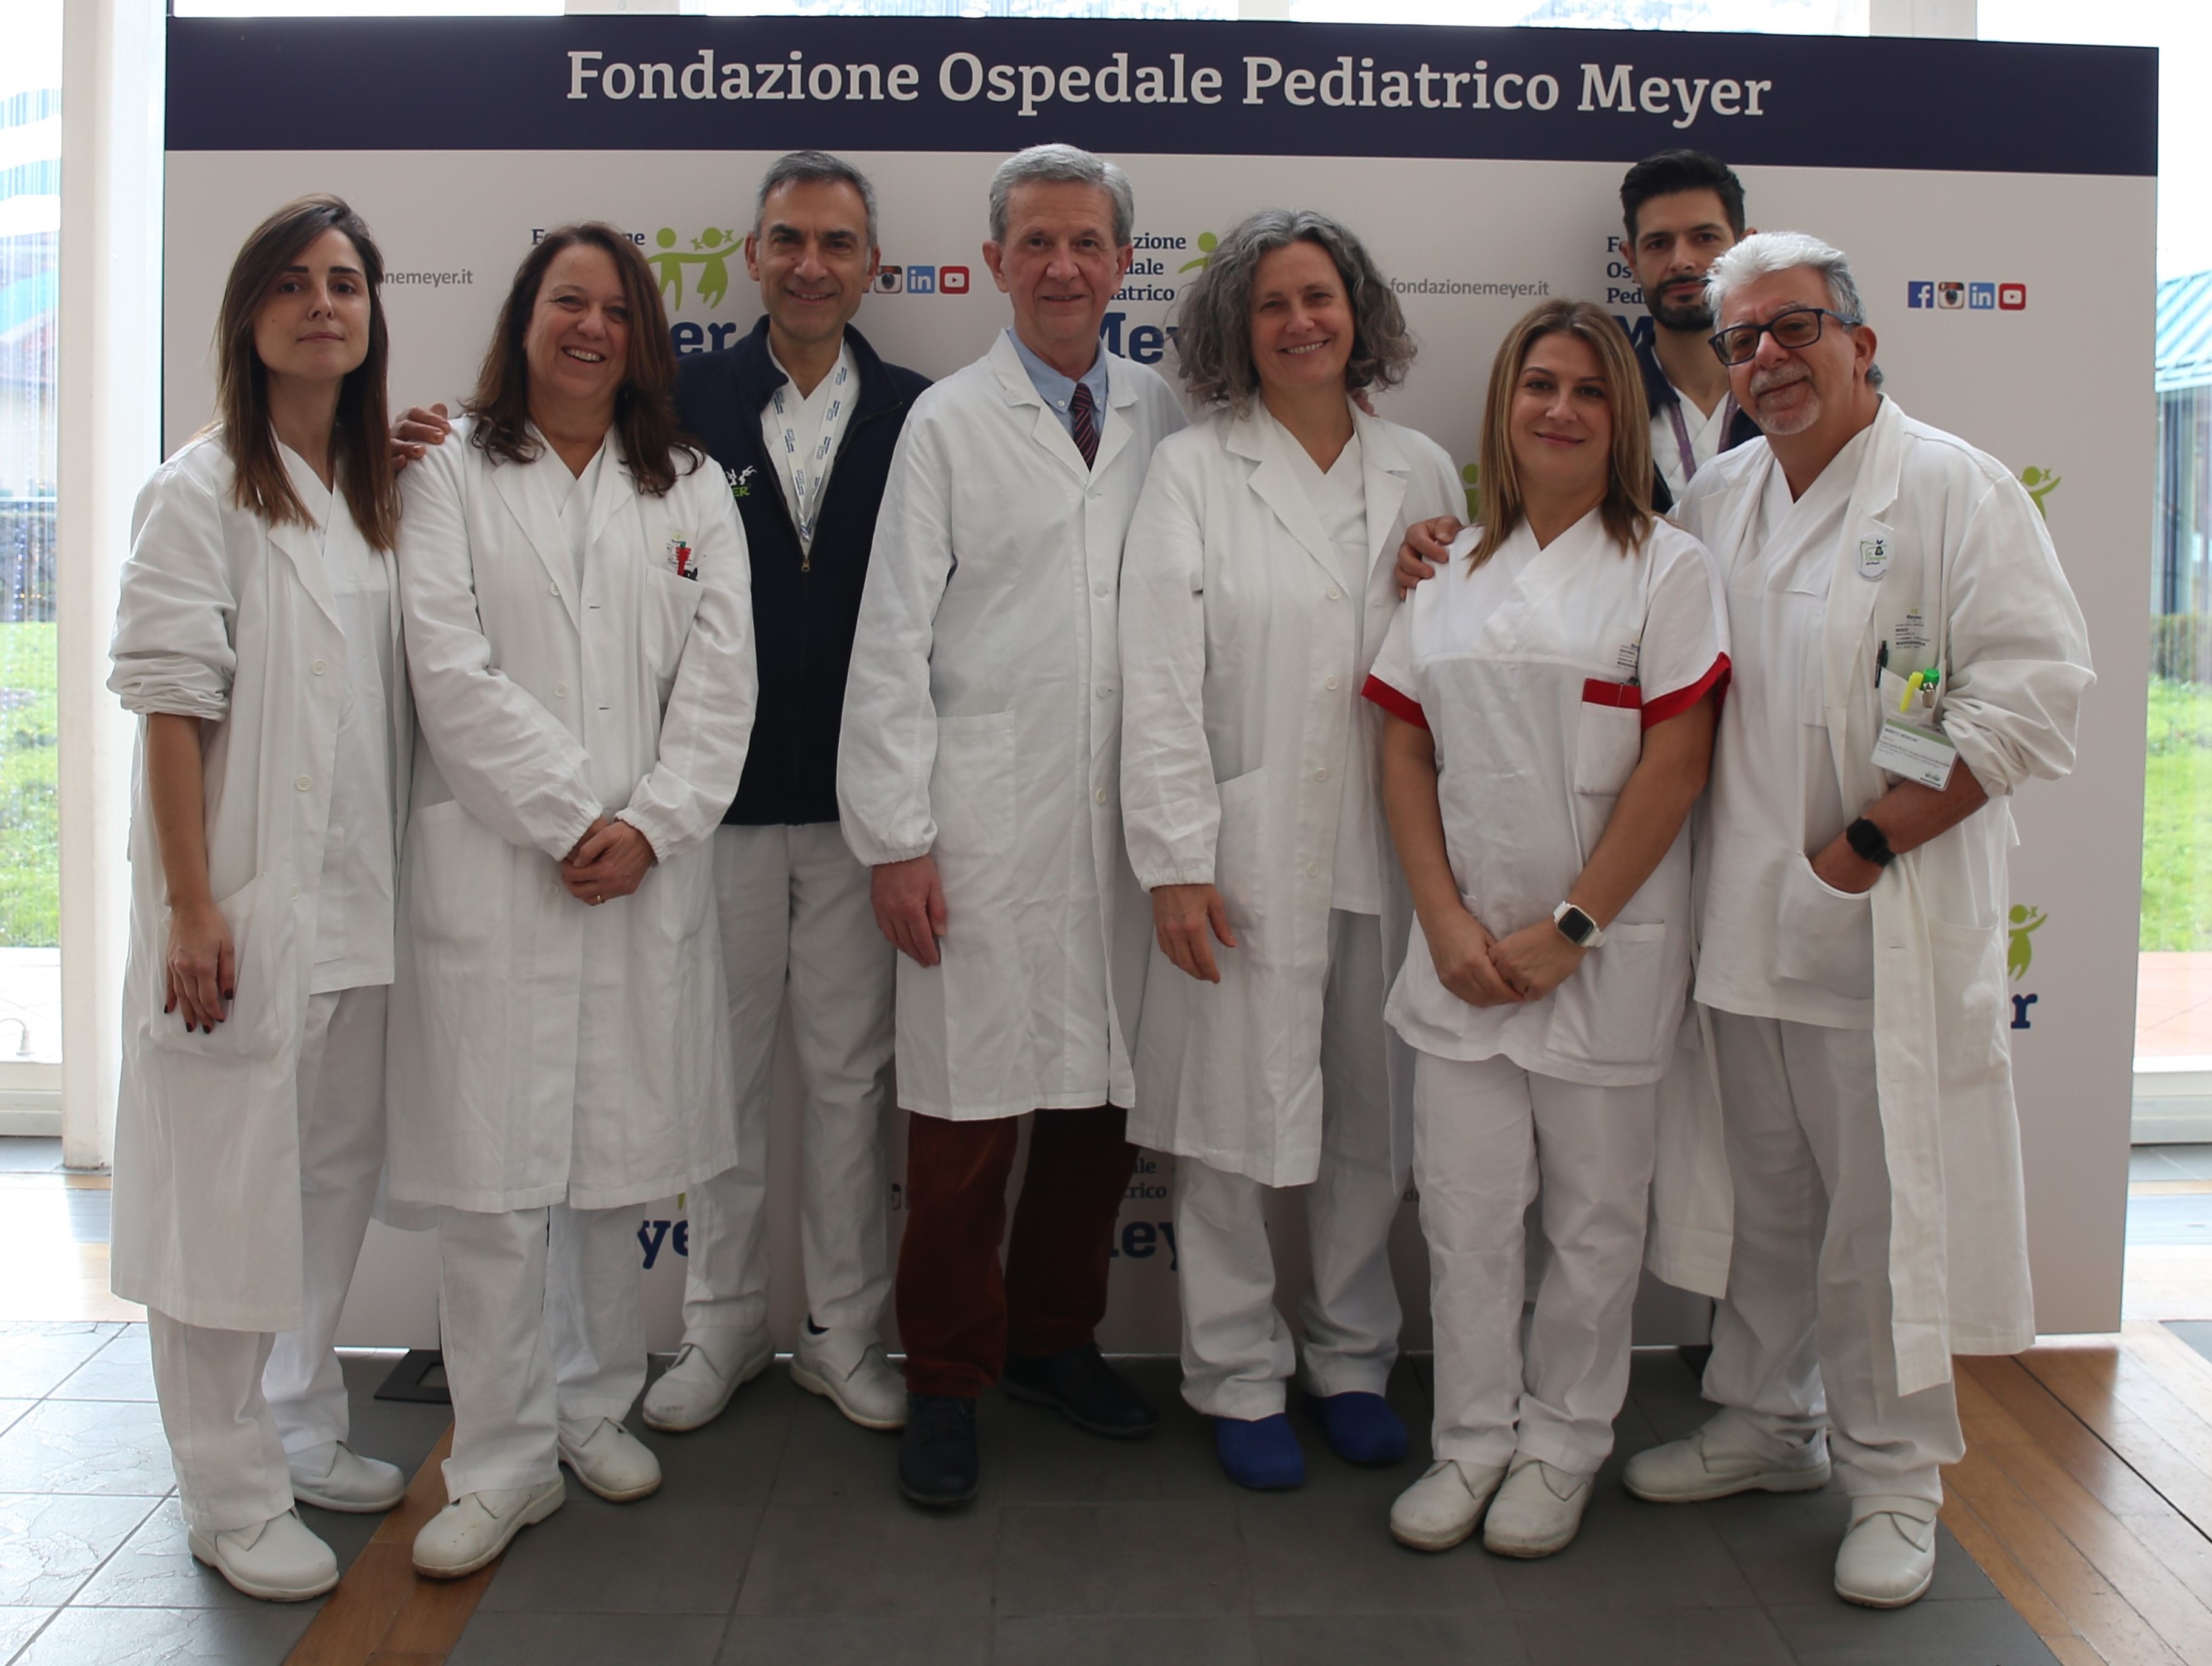 Il team che ha salvato la neonata al Meyer Irccs al centro dottor Biagiotti a fianco prof Morabito (Fonte foto Meyer)